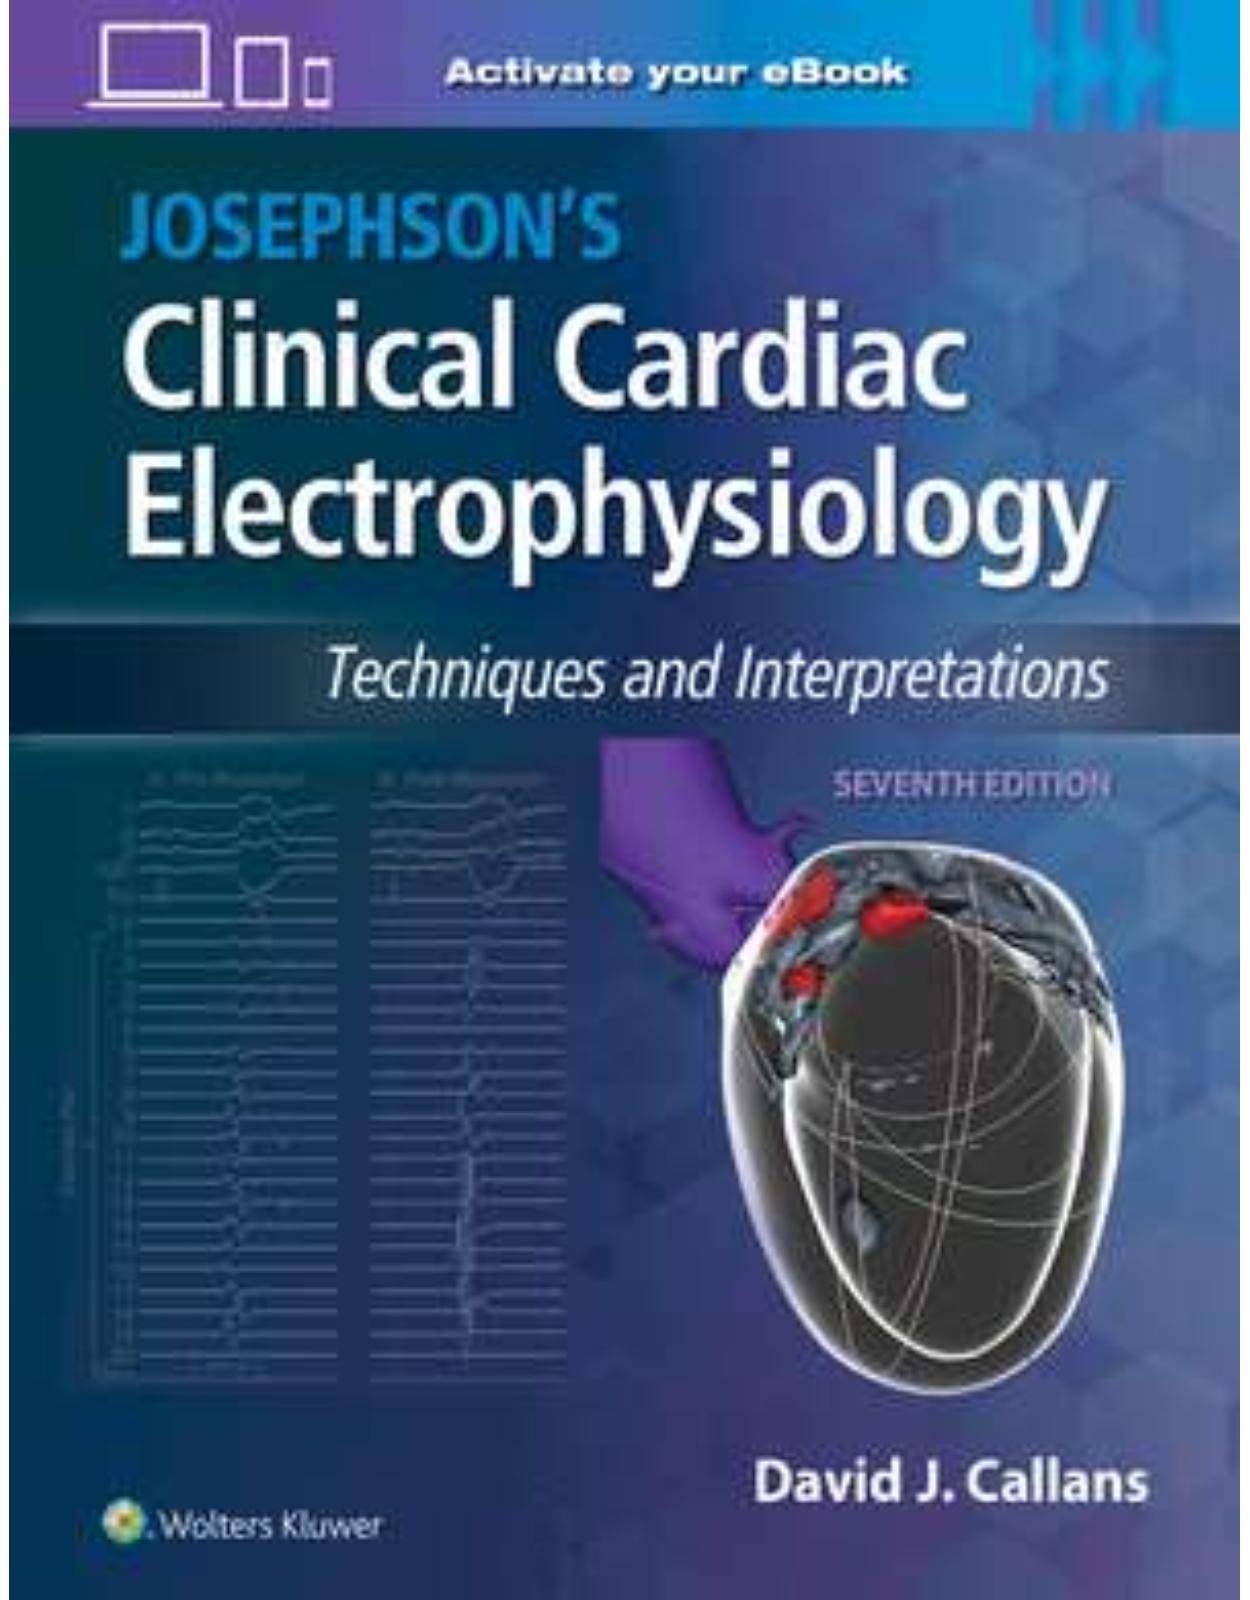 Josephson’s Clinical Cardiac Electrophysiology